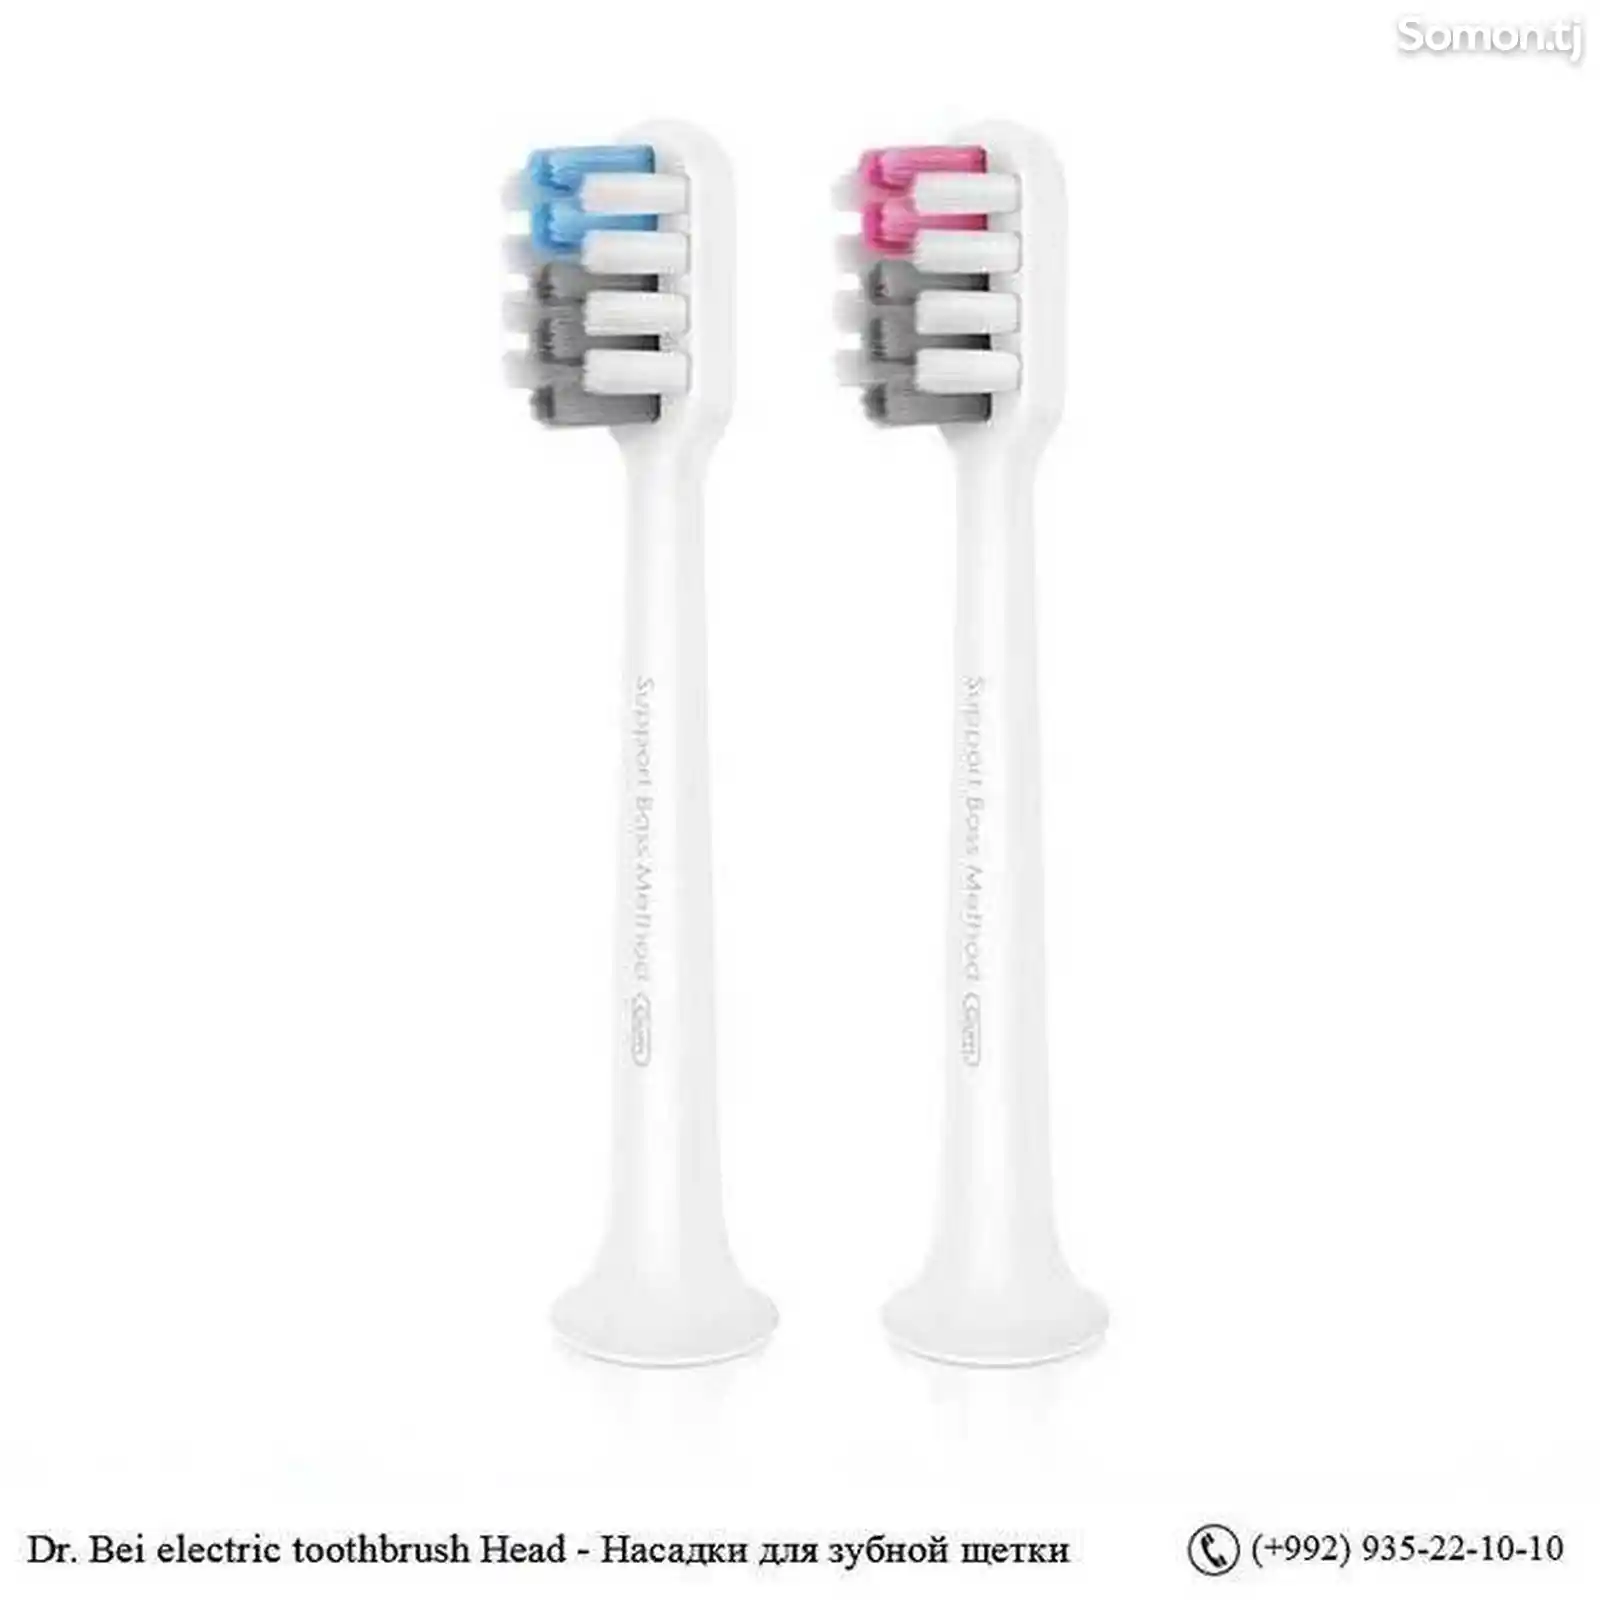 Dr. Bei electric toothbrush Head - Сменные насадки для зубной щетки-2